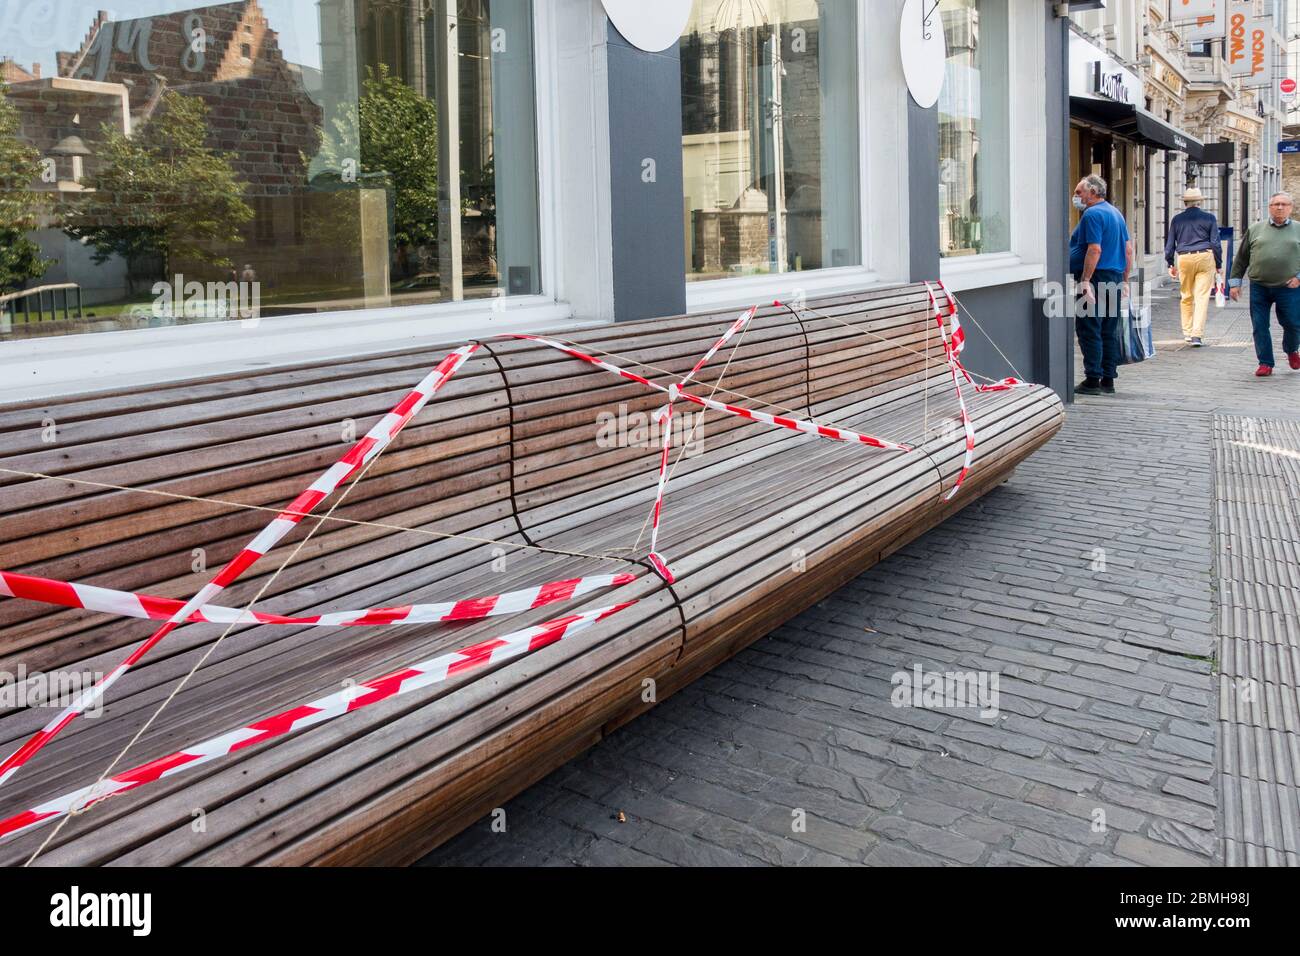 Banco público cerrado y sellado con cinta para evitar sentarse debido a la pandemia del virus 2020 COVID-19 / coronavirus / corona en la ciudad de Gante, Bélgica Foto de stock